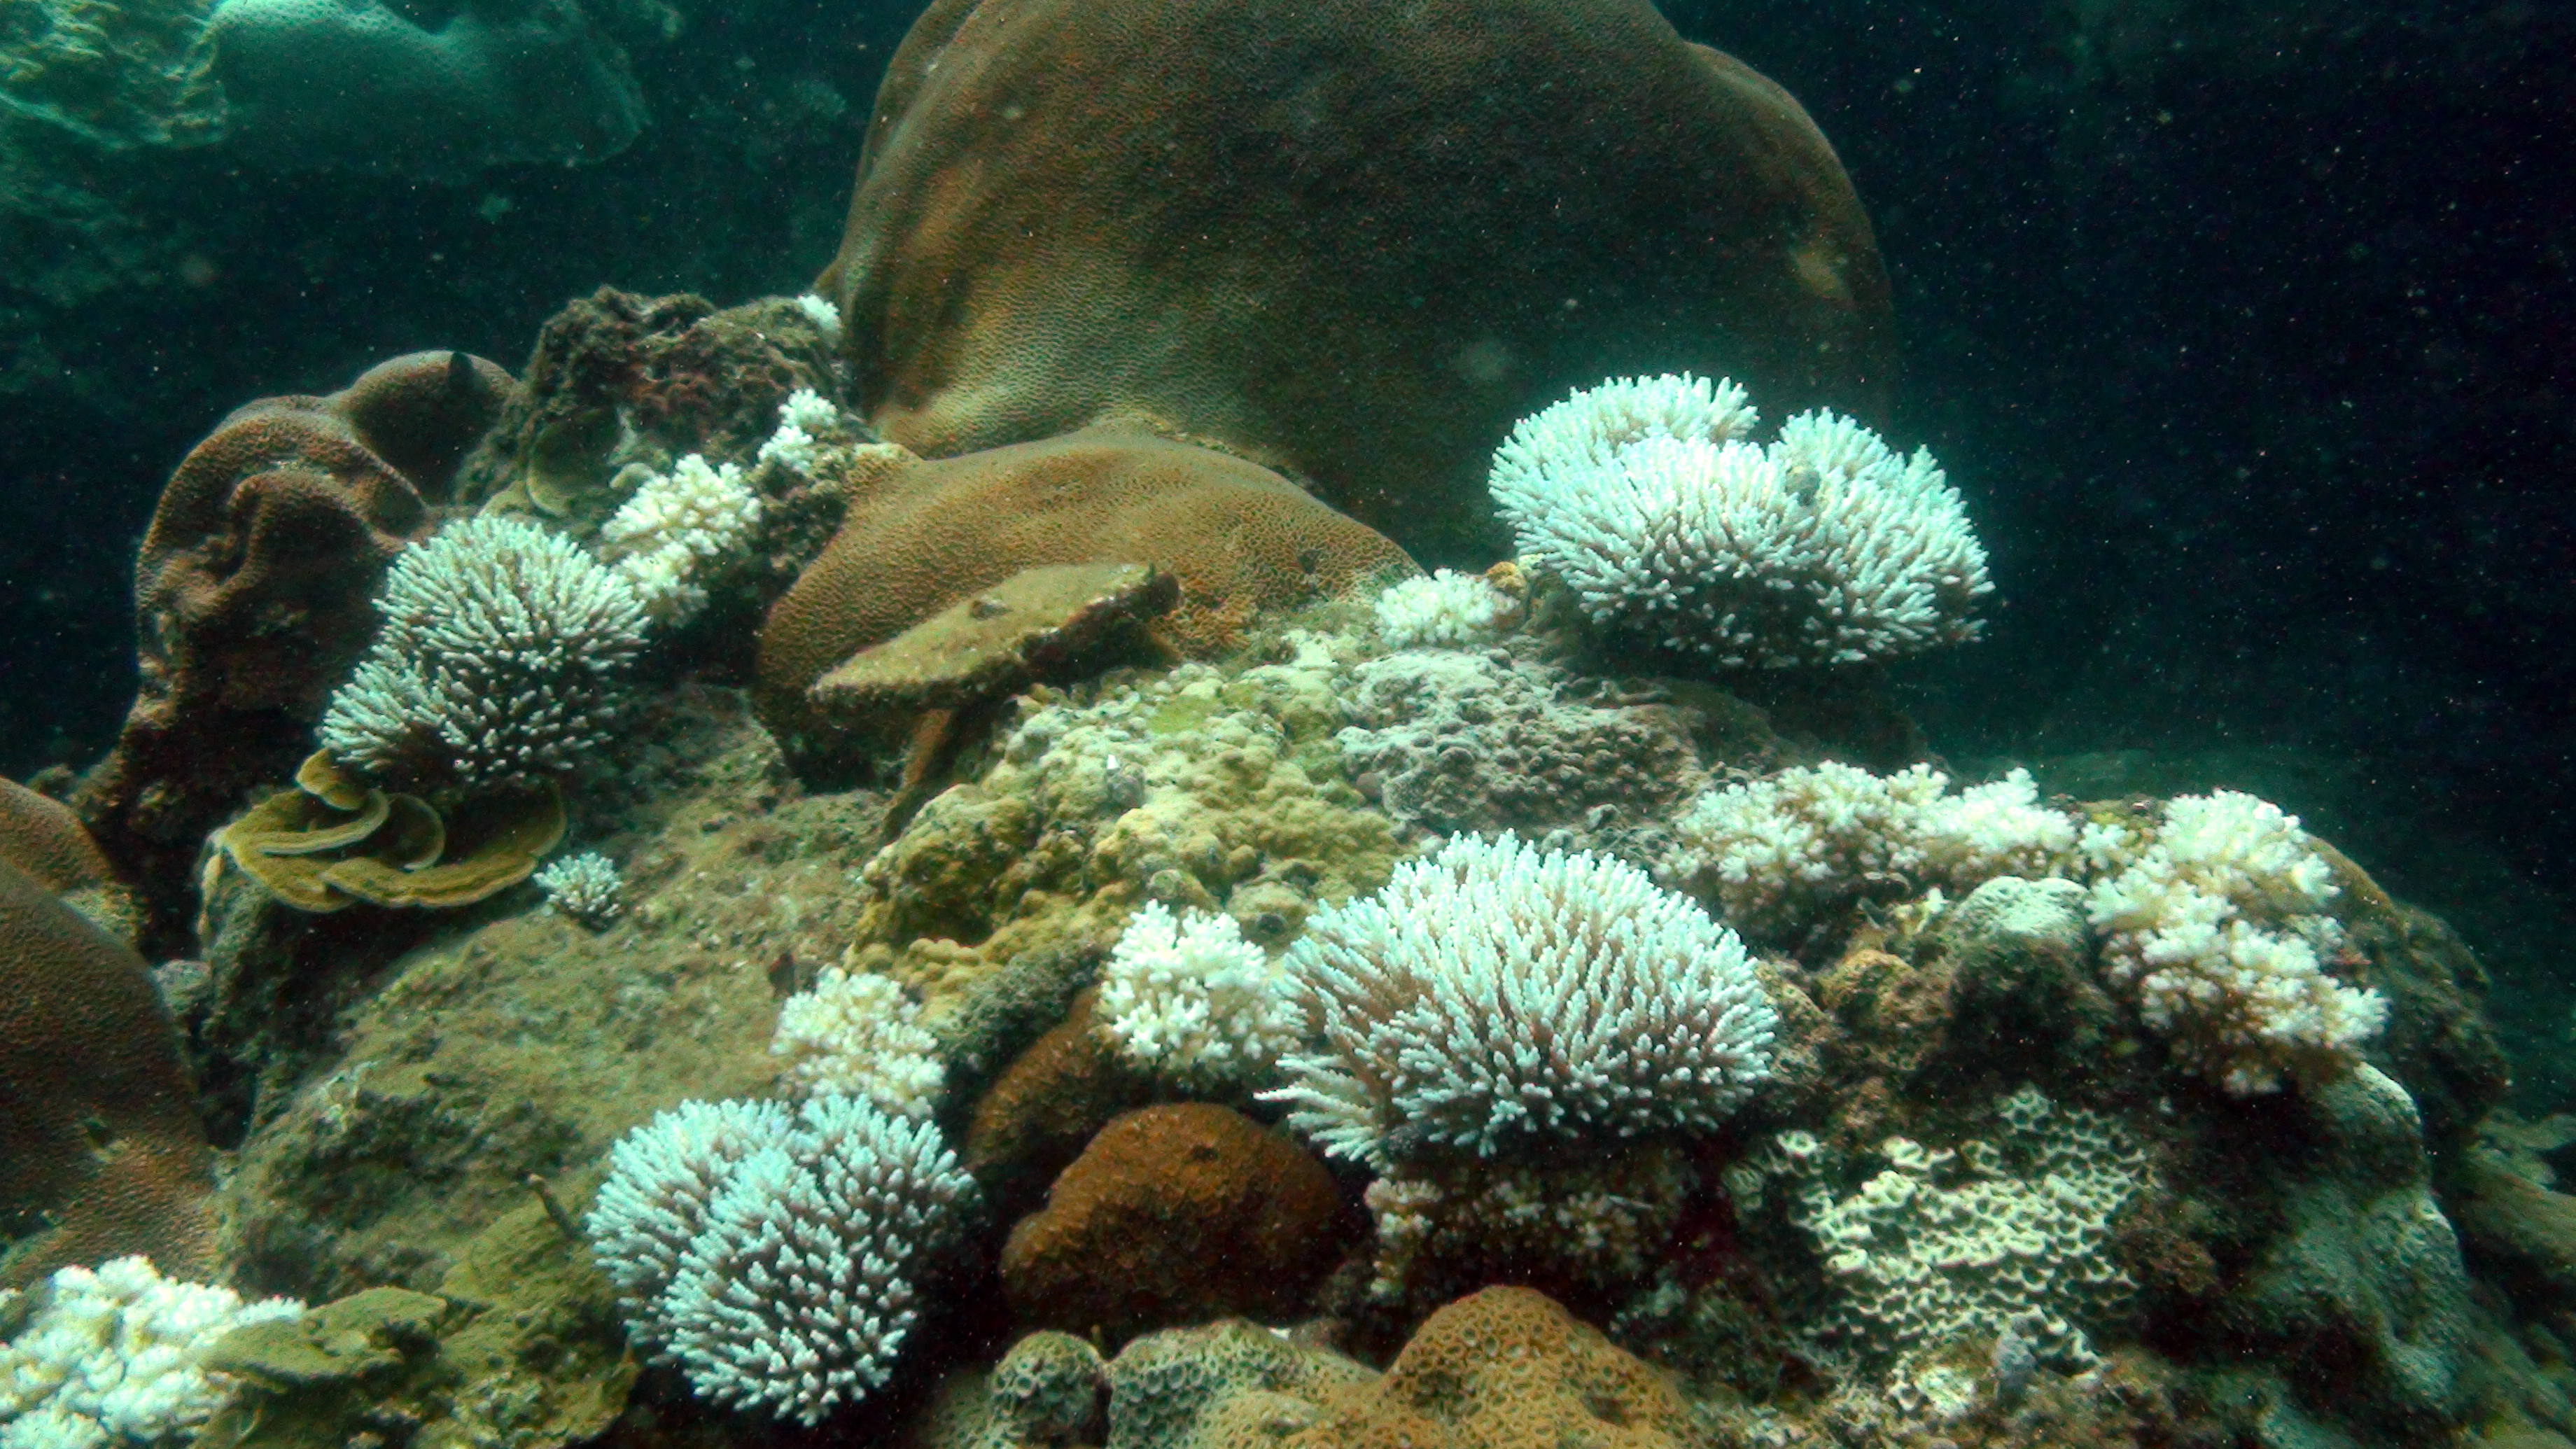 Coral Reef Bleaching